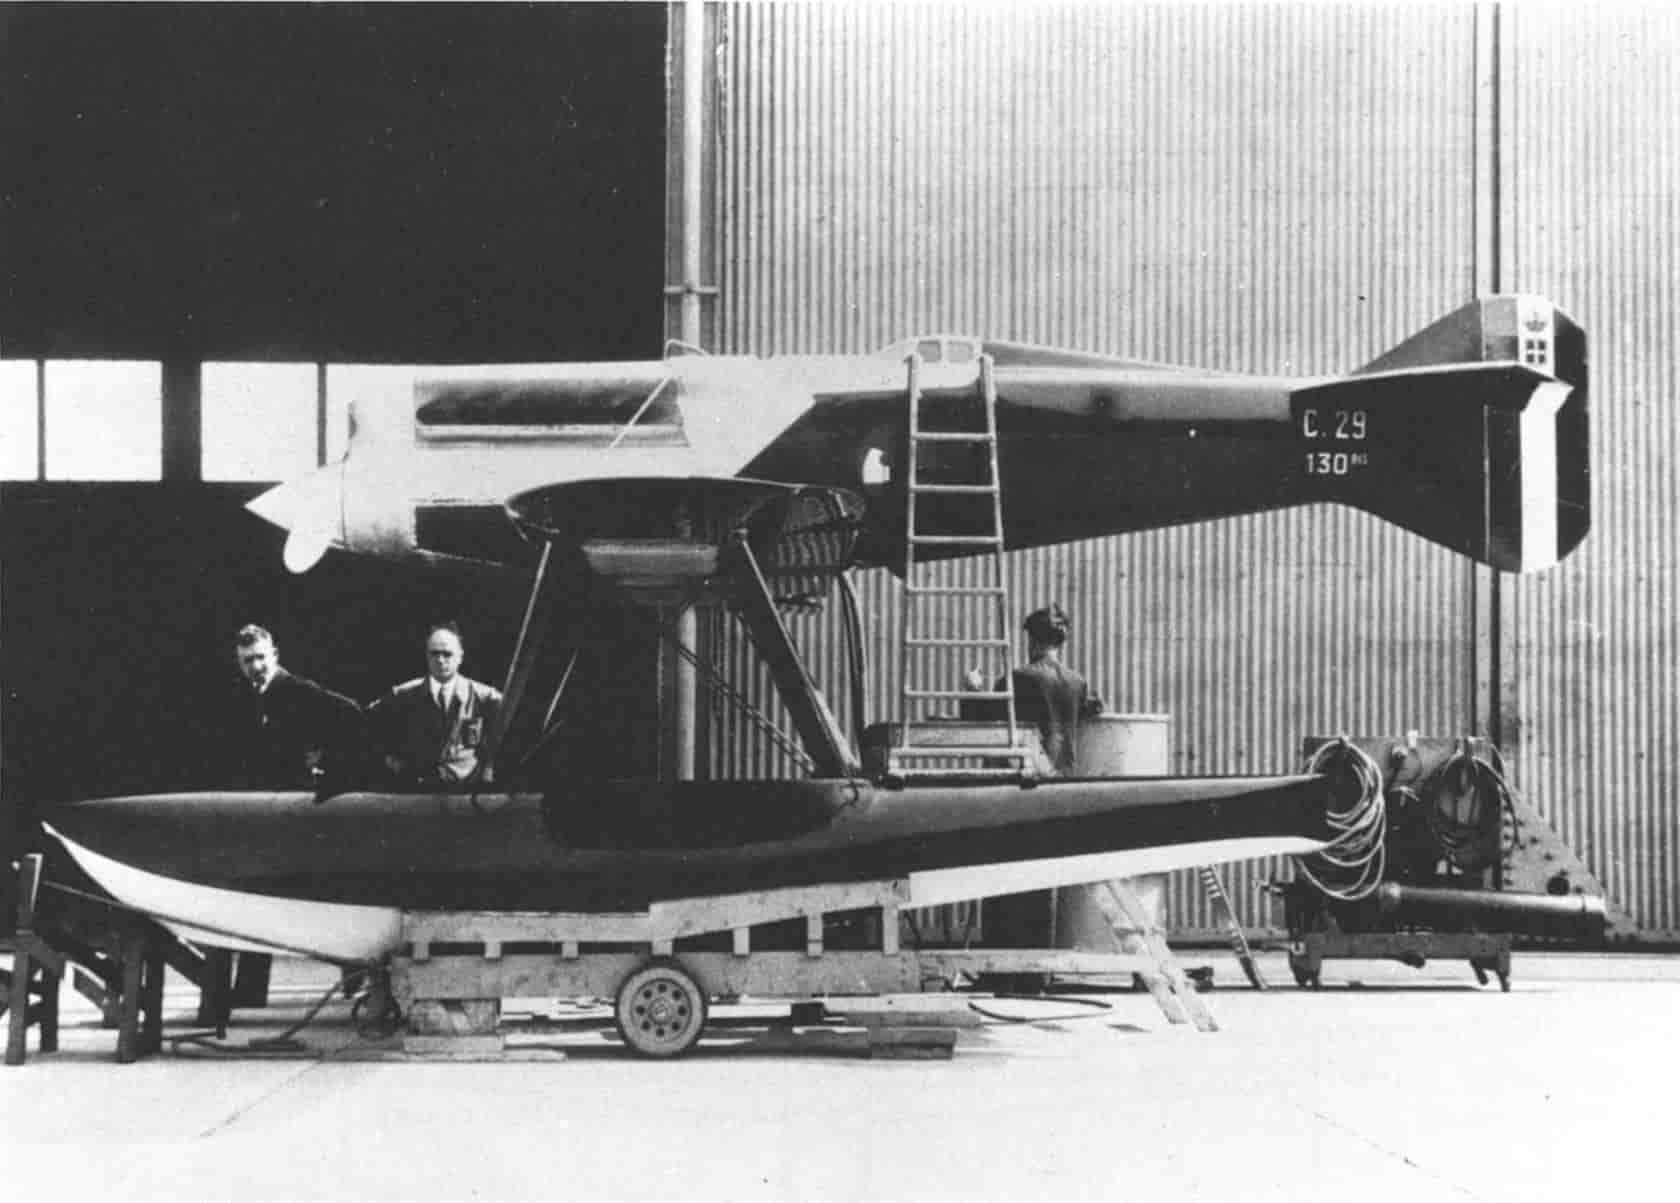 Особенностью гоночного гидроплана ФИАТ С.29 была полностью закрытая кабина пилота, сделанная на нем впервые среди самолетов, строившихся для гонок на Кубок Шнейдера